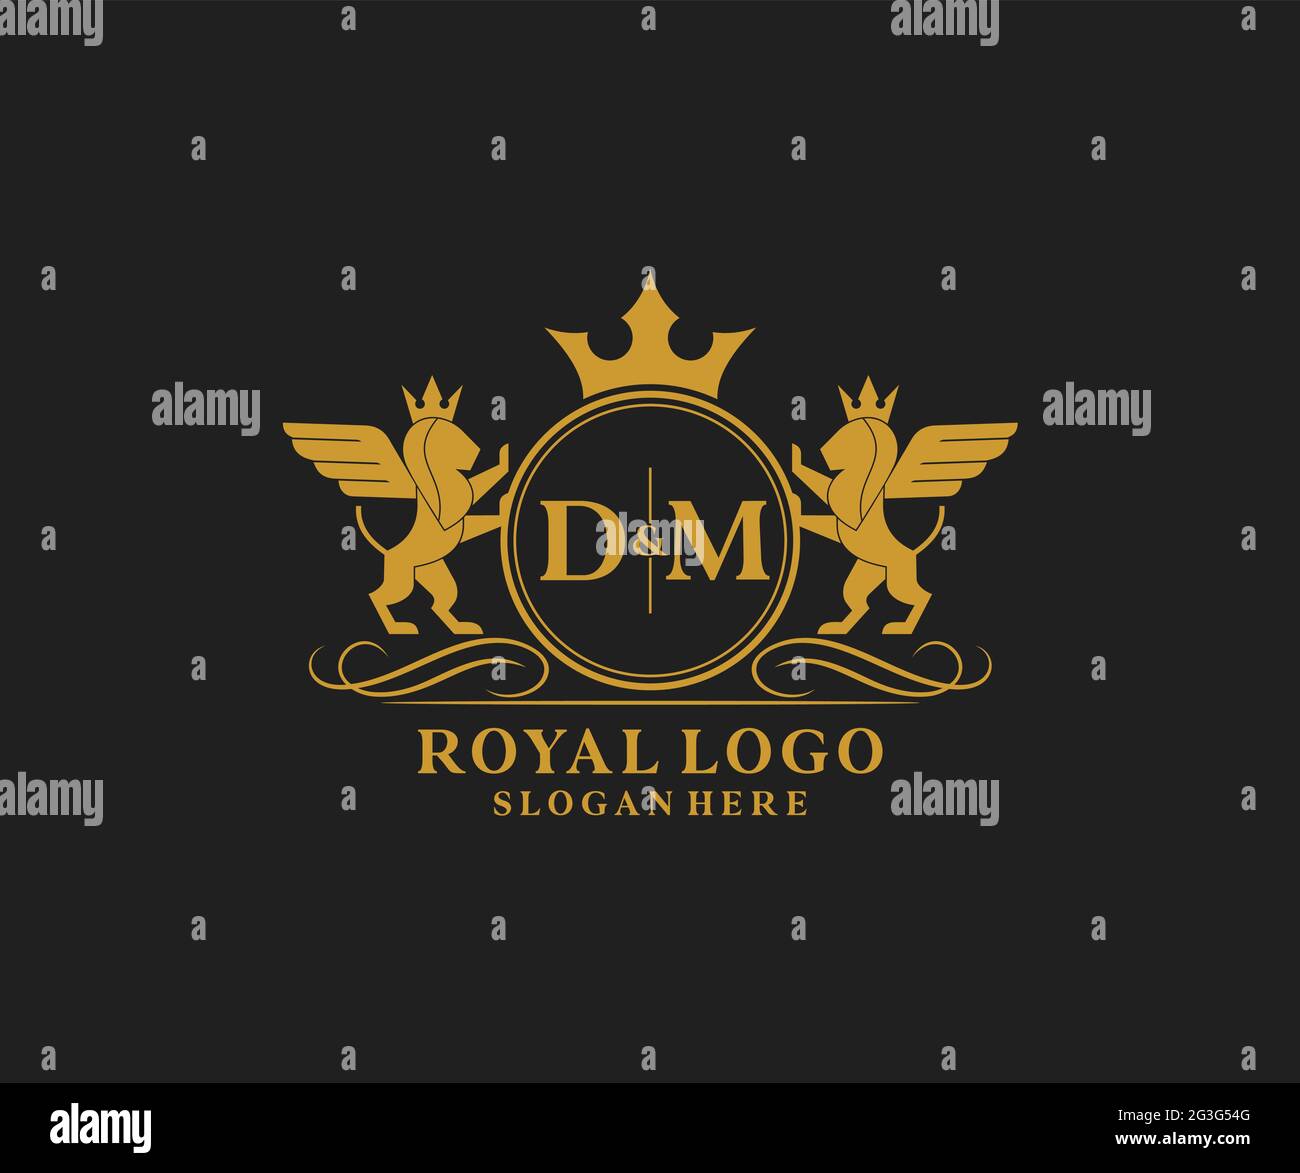 Lettre DM Lion Royal Luxury Heraldic, Crest logo template dans l'art  vectoriel pour restaurant, Royalty, Boutique, café, Hôtel, Héraldique,  bijoux, mode et Image Vectorielle Stock - Alamy